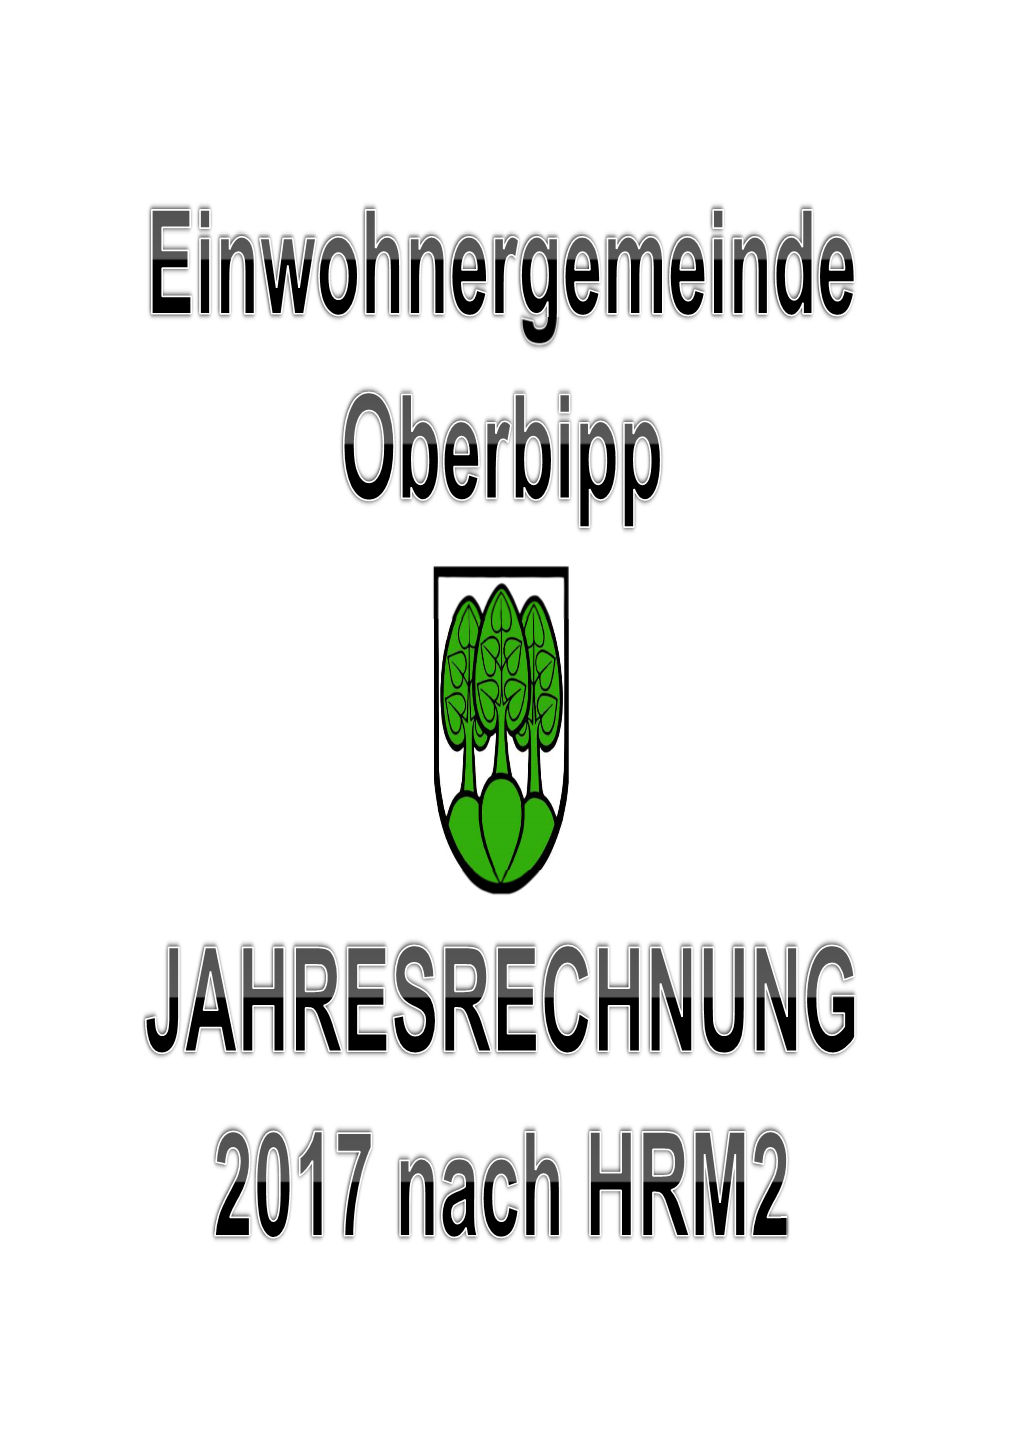 Jahresrechnung 2017 Der Einwohnergemeinde Oberbipp Wurde Nach Dem "Harmonisierten Rechnungsmodell 2" (HRM2) Des Kantons Bern Erstellt